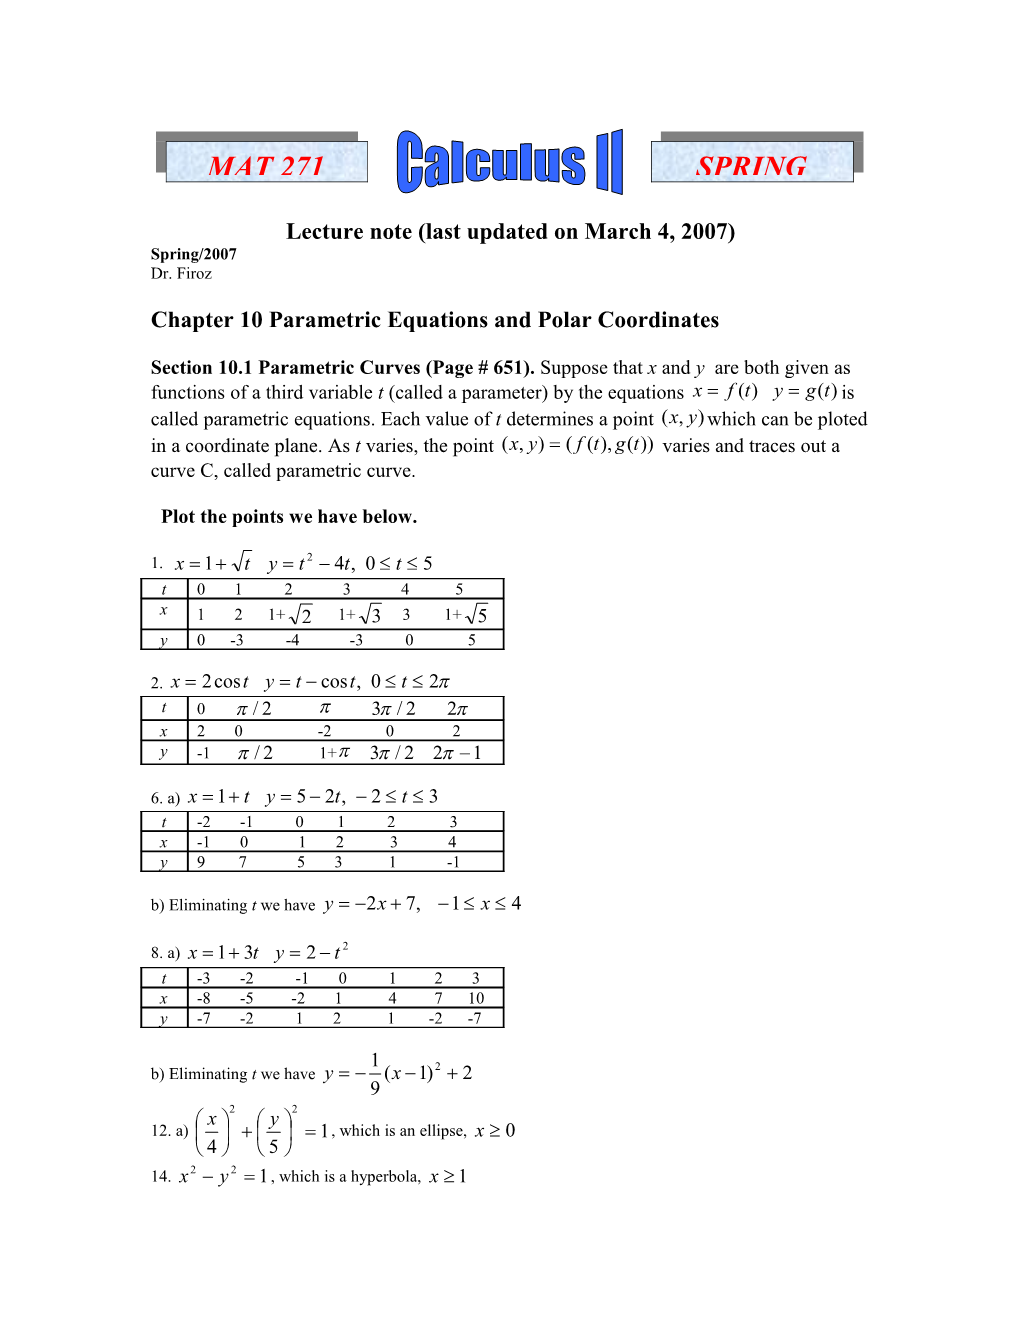 Chapter 10 Parametric Equations and Polar Coordinates